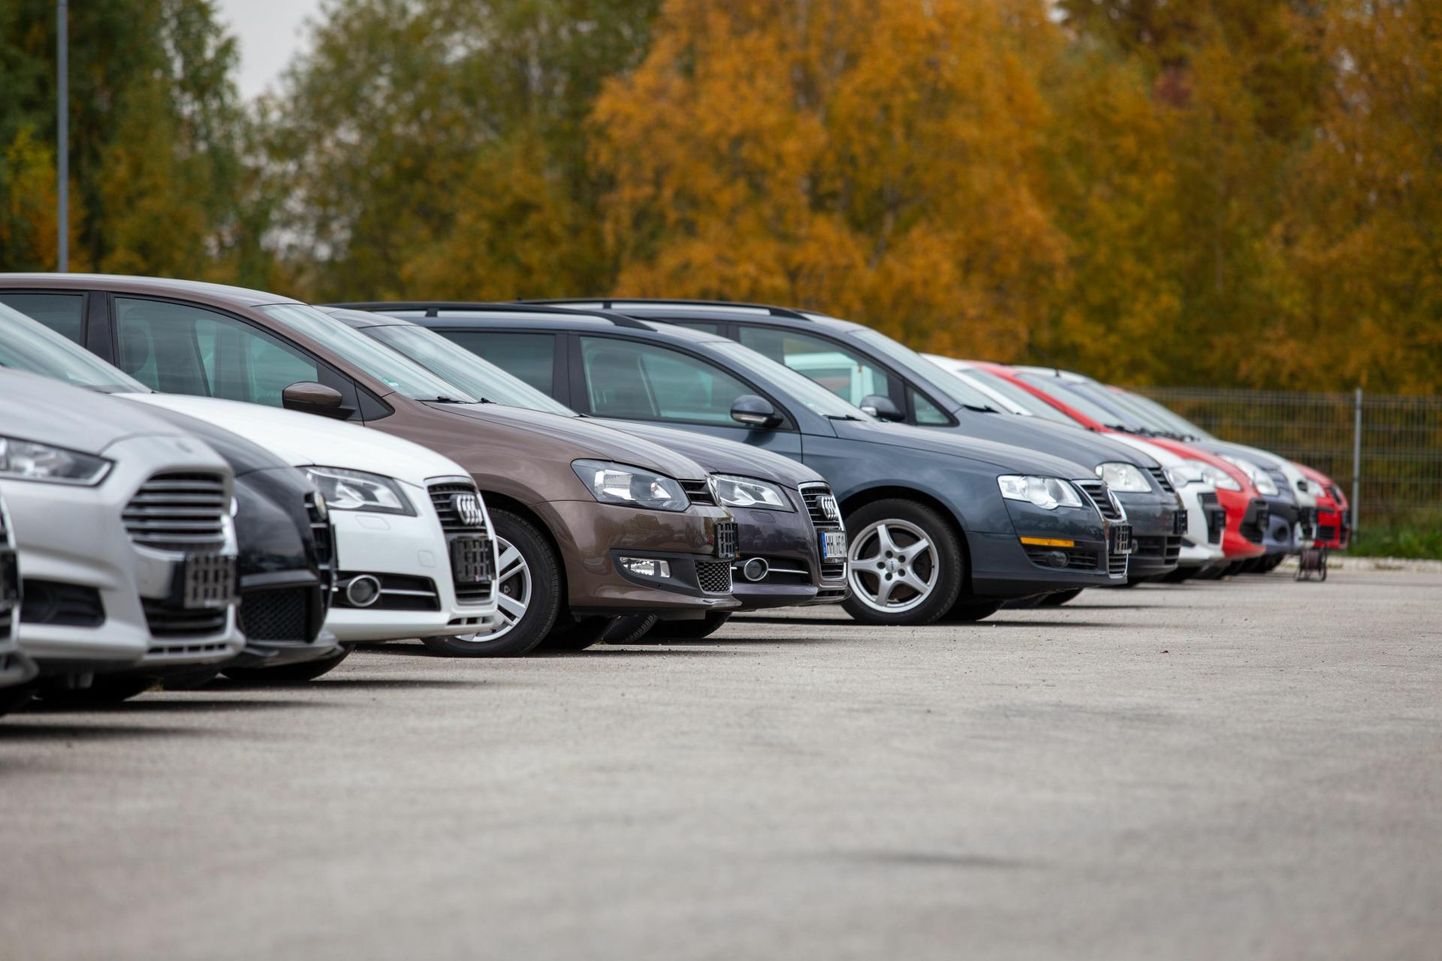 Lätis on ettevõtete sõidukitele kehtestatud eraldi maksumäär.